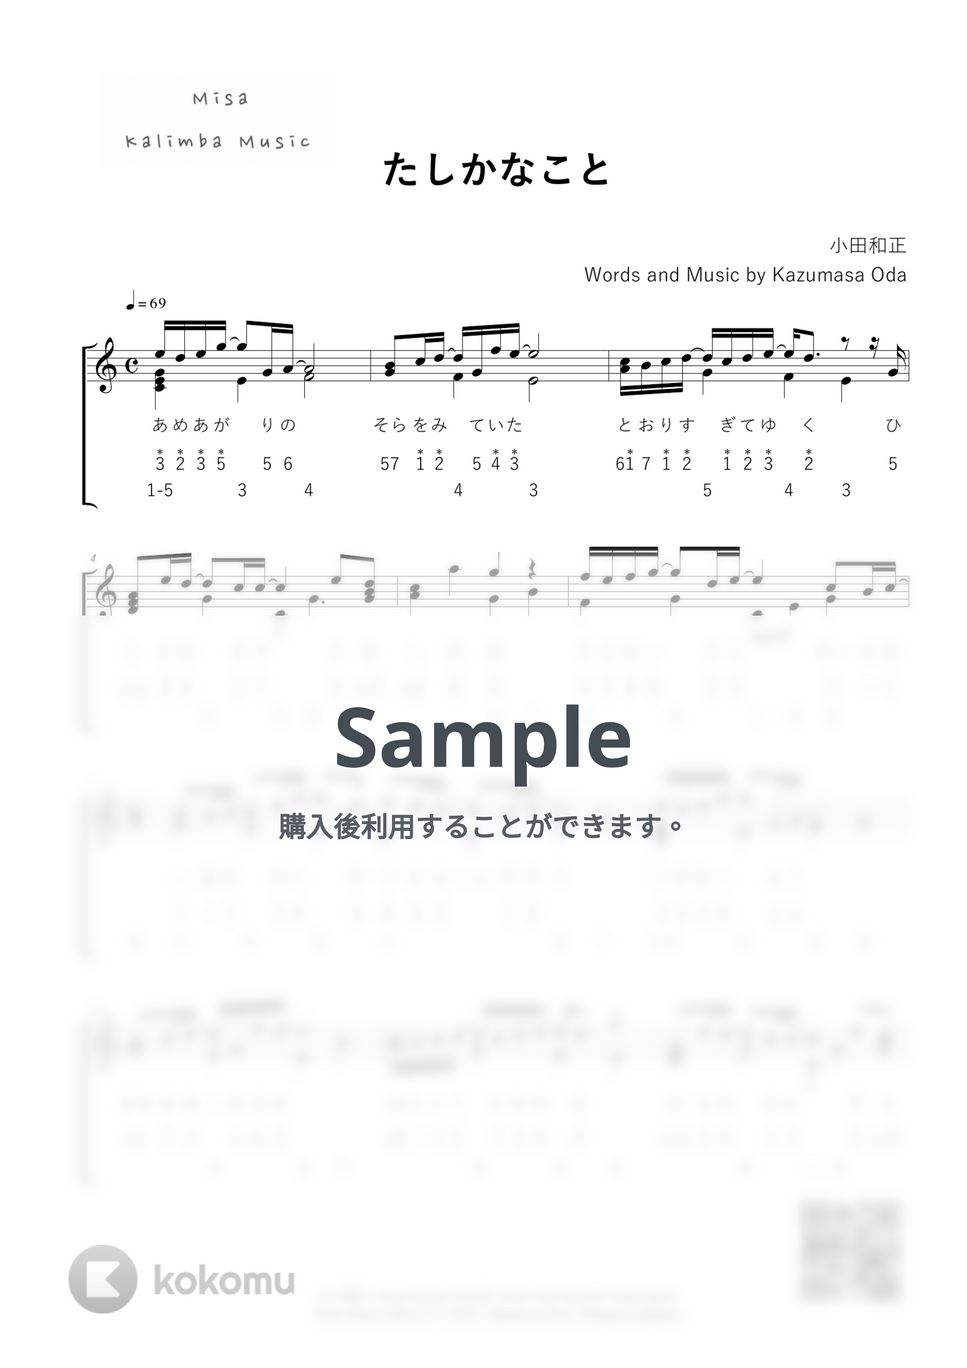 小田和正 - たしかなこと / 数字音名表記 /17音カリンバ (歌詞付き/ 模範演奏付き) by Misa / Kalimba Music